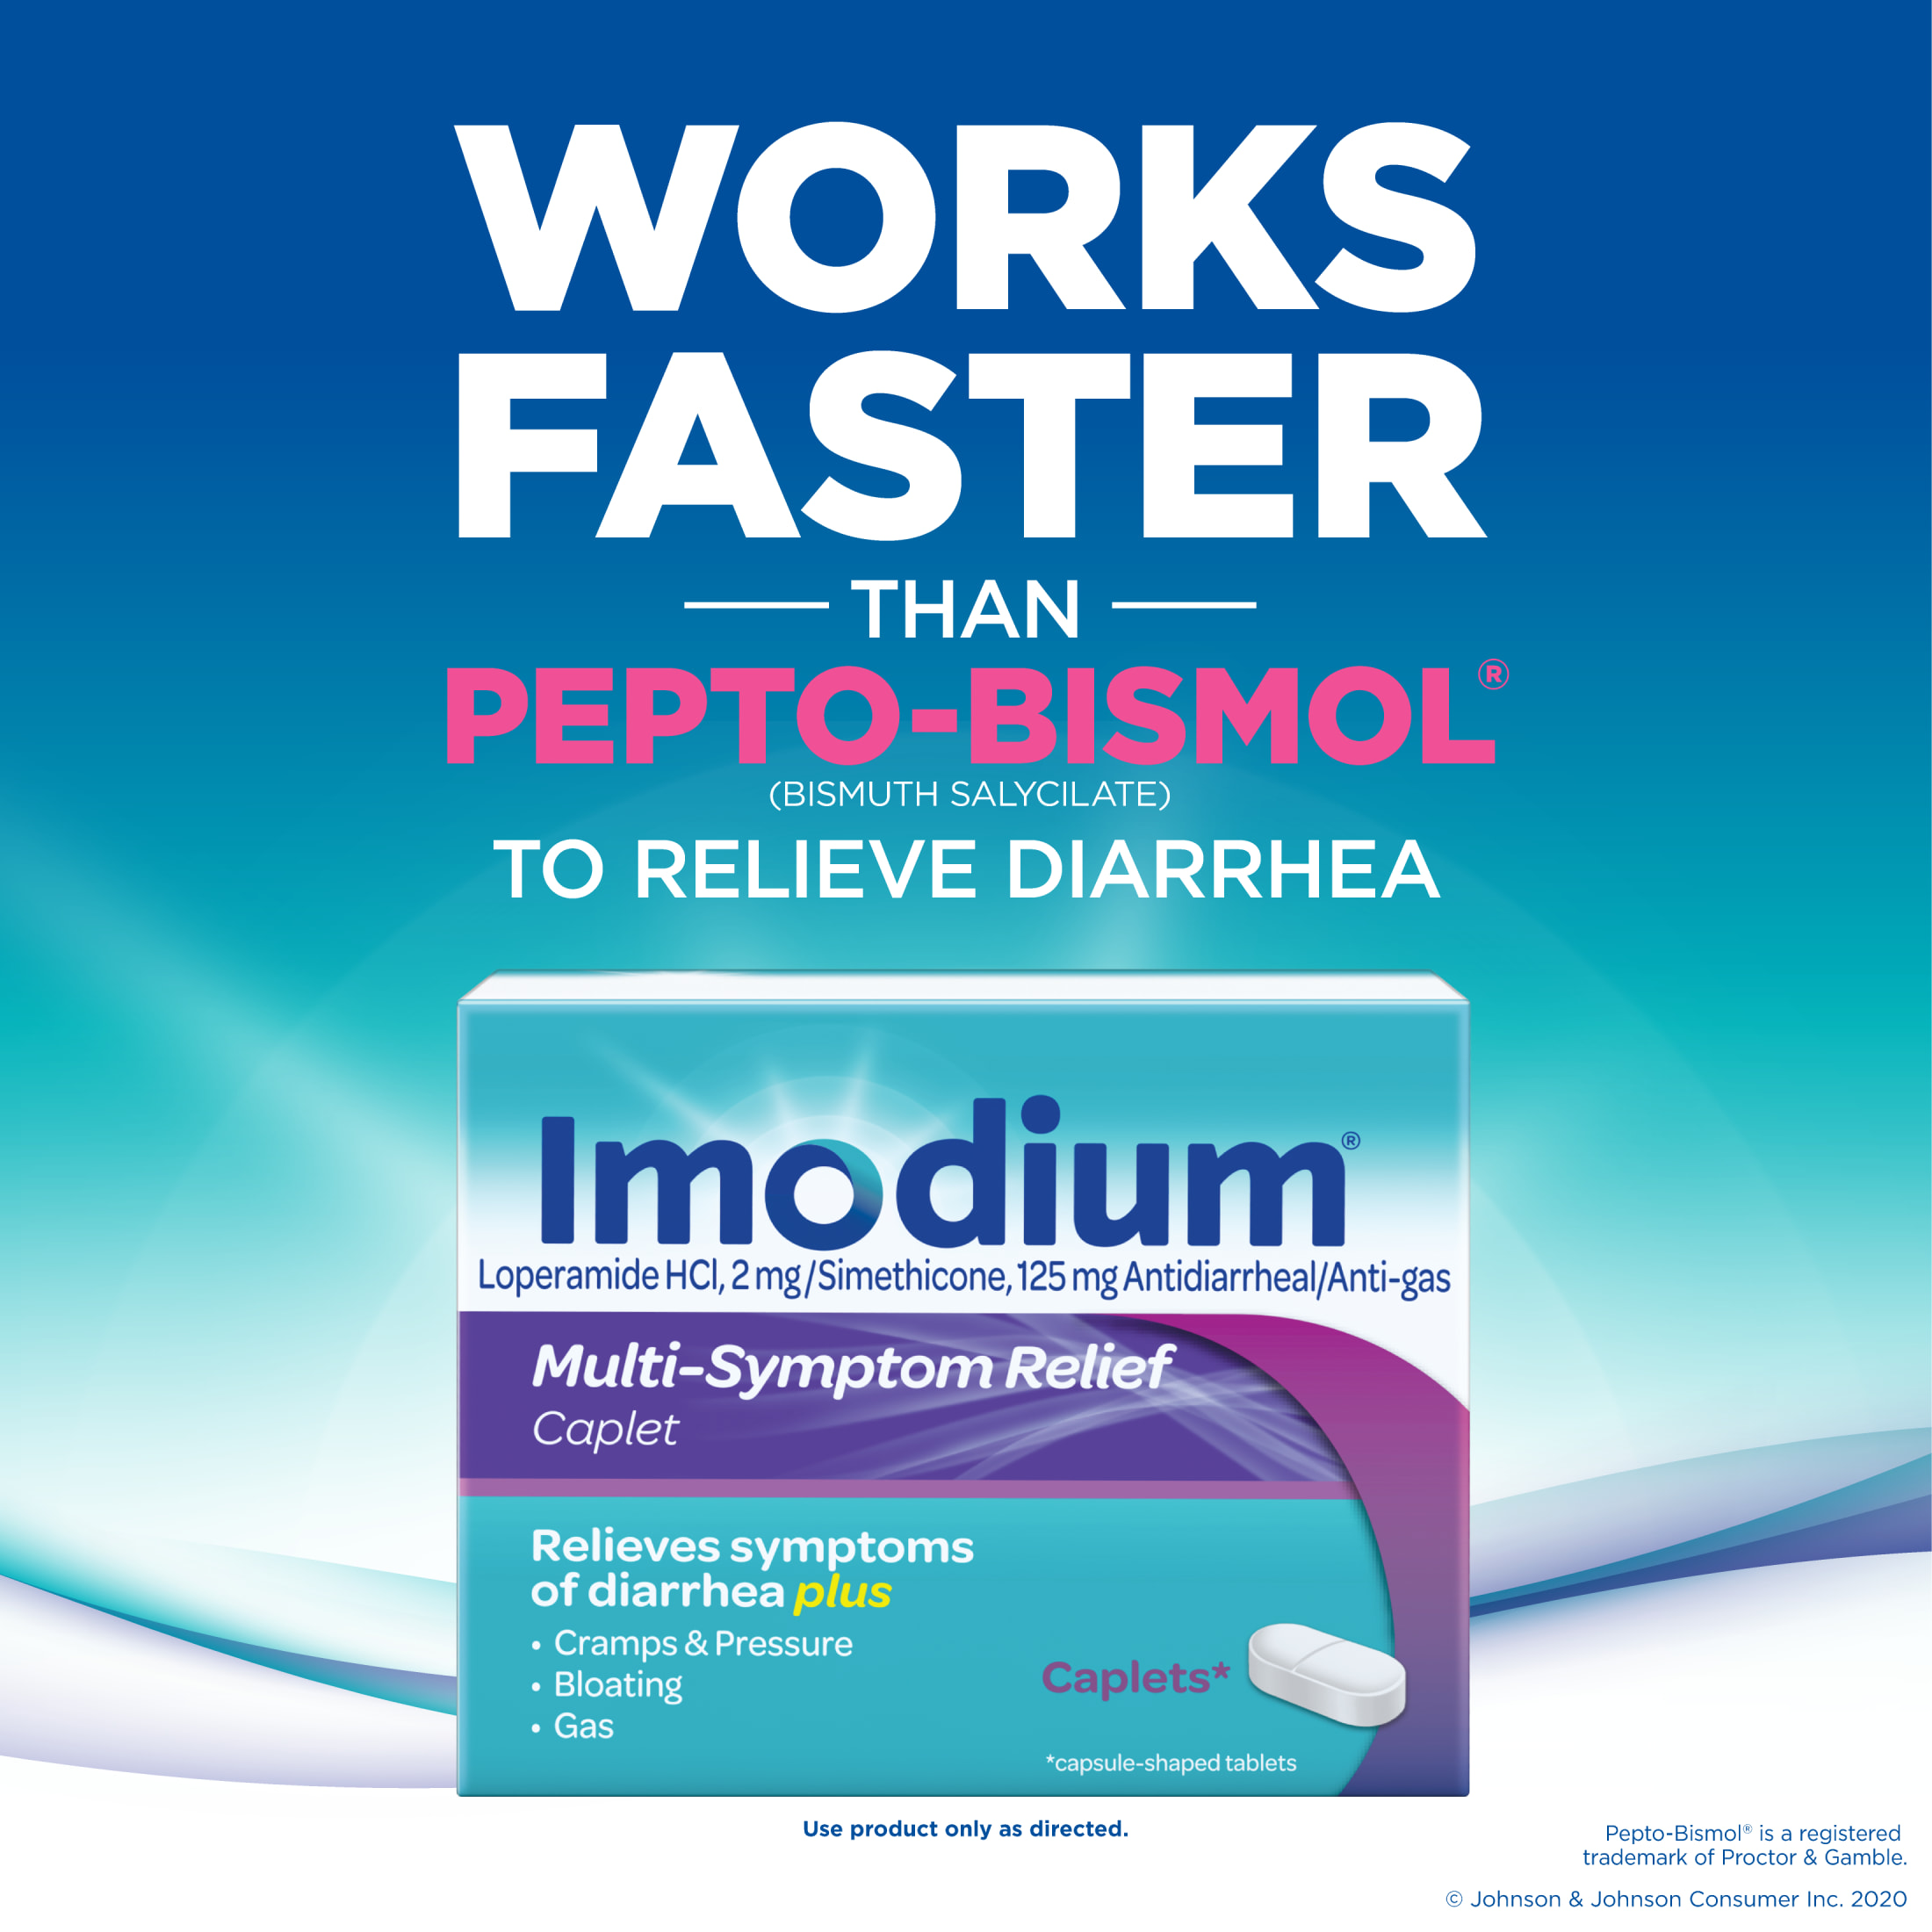 Imodium Multi-Symptom Relief Anti-Diarrheal Medicine Caplets, 42 ct. - image 4 of 11